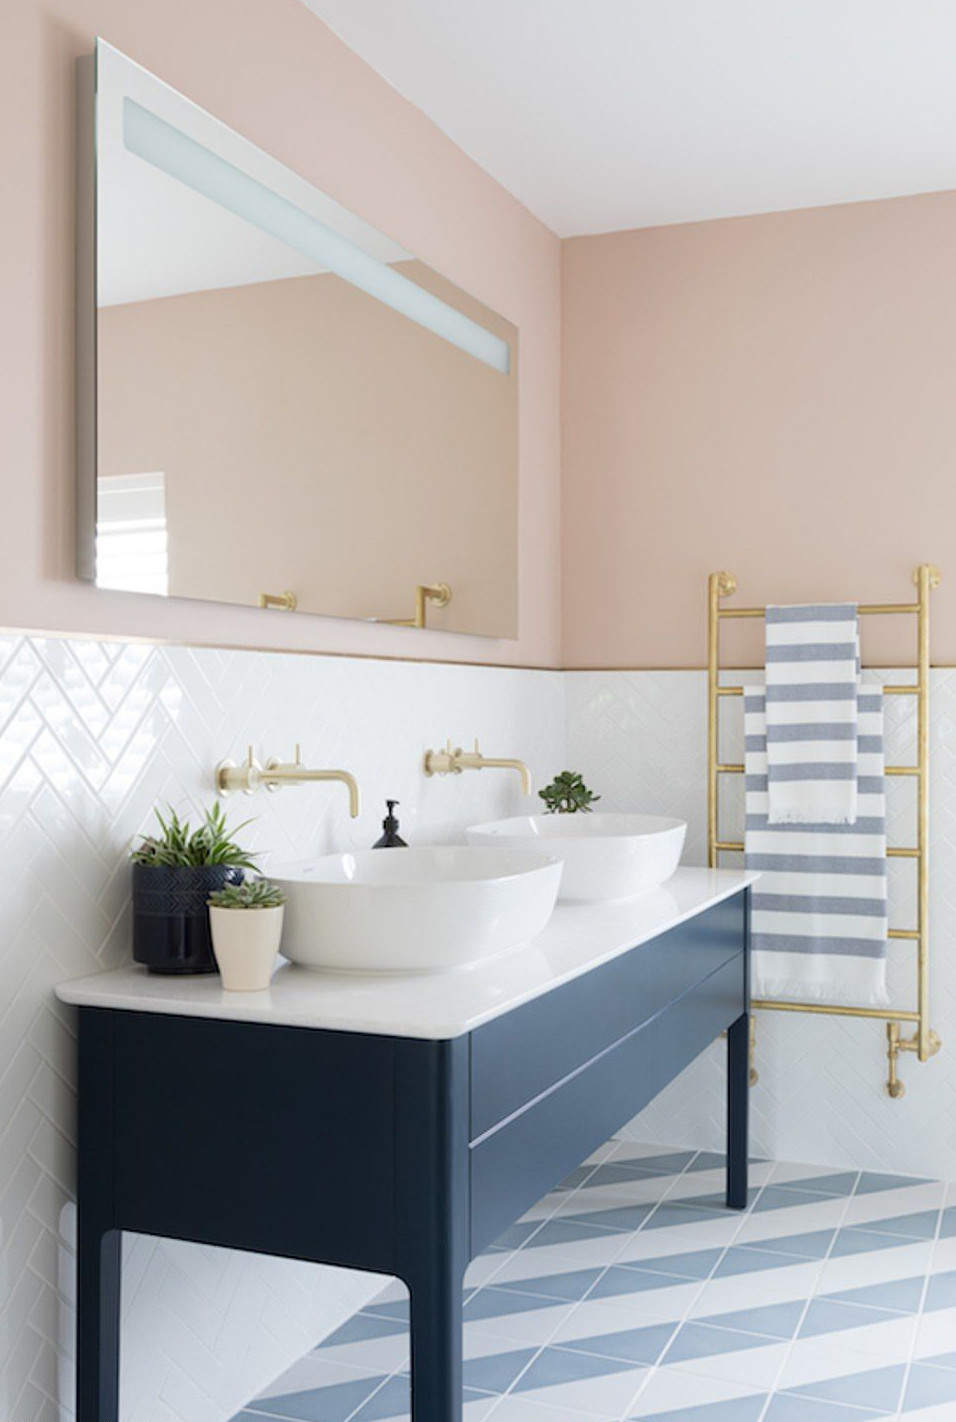 на фото зображено варіант інтер'єру ванної кімнати з укладанням керамічної плитки на половину стіни